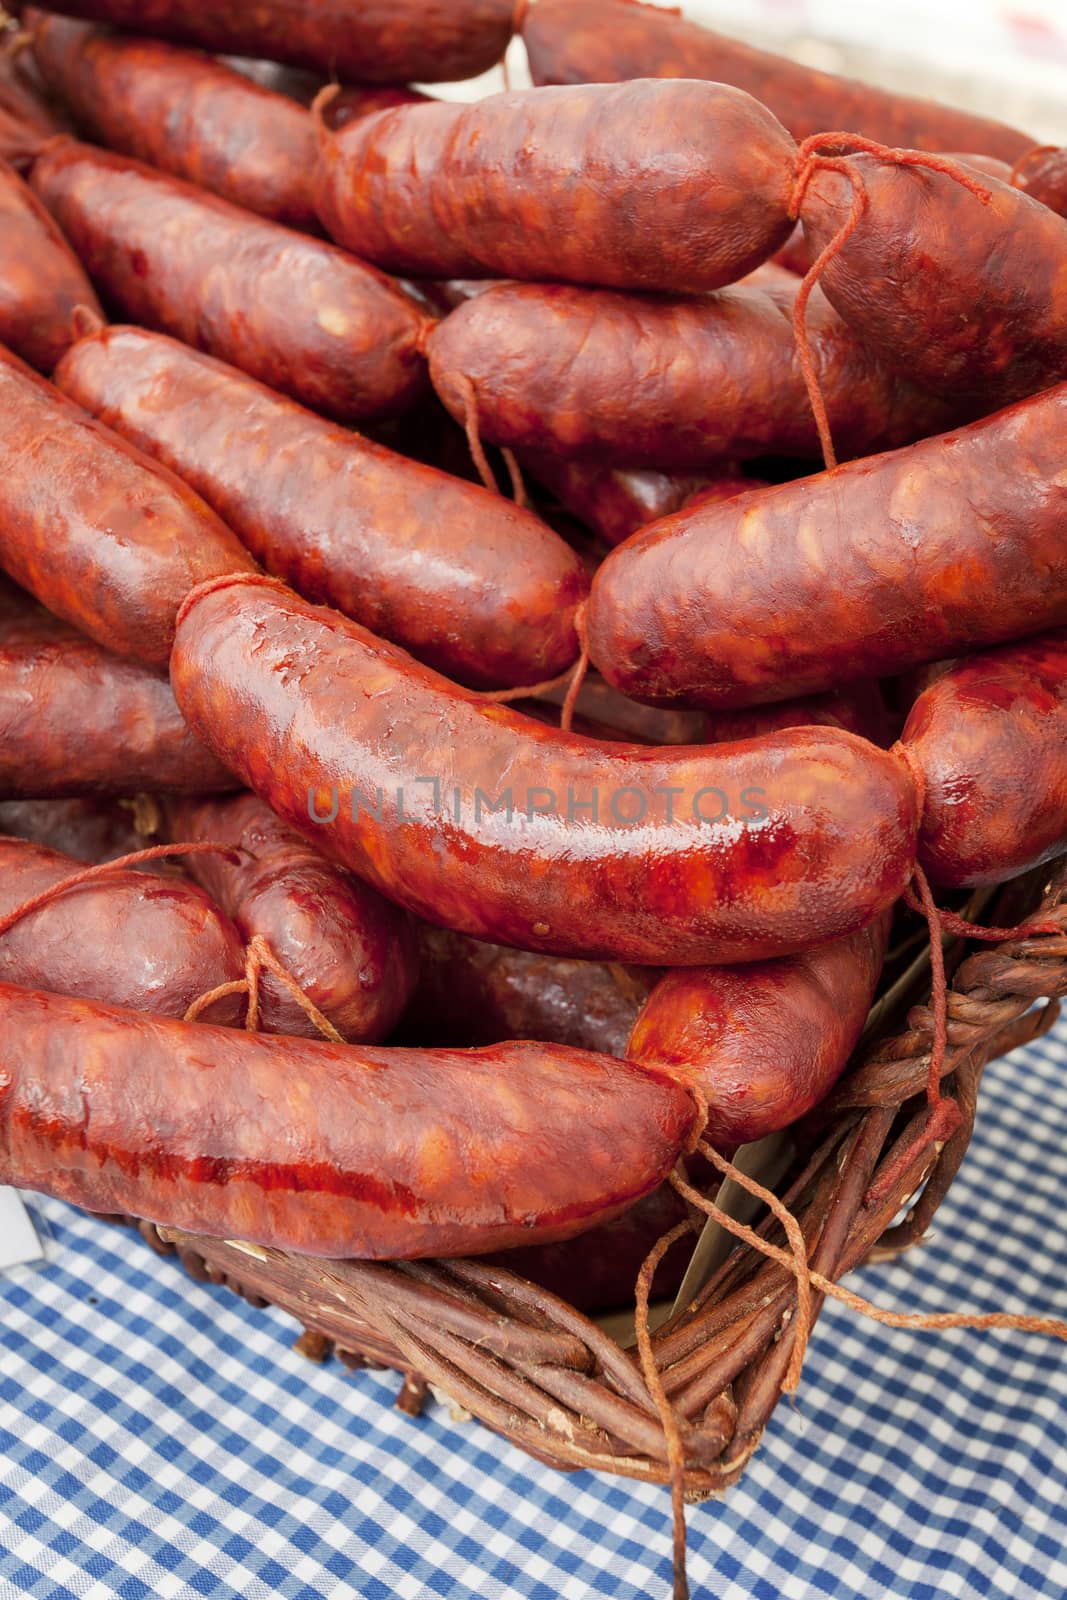 Homemade sausage, traditional Spanish market. Asturias